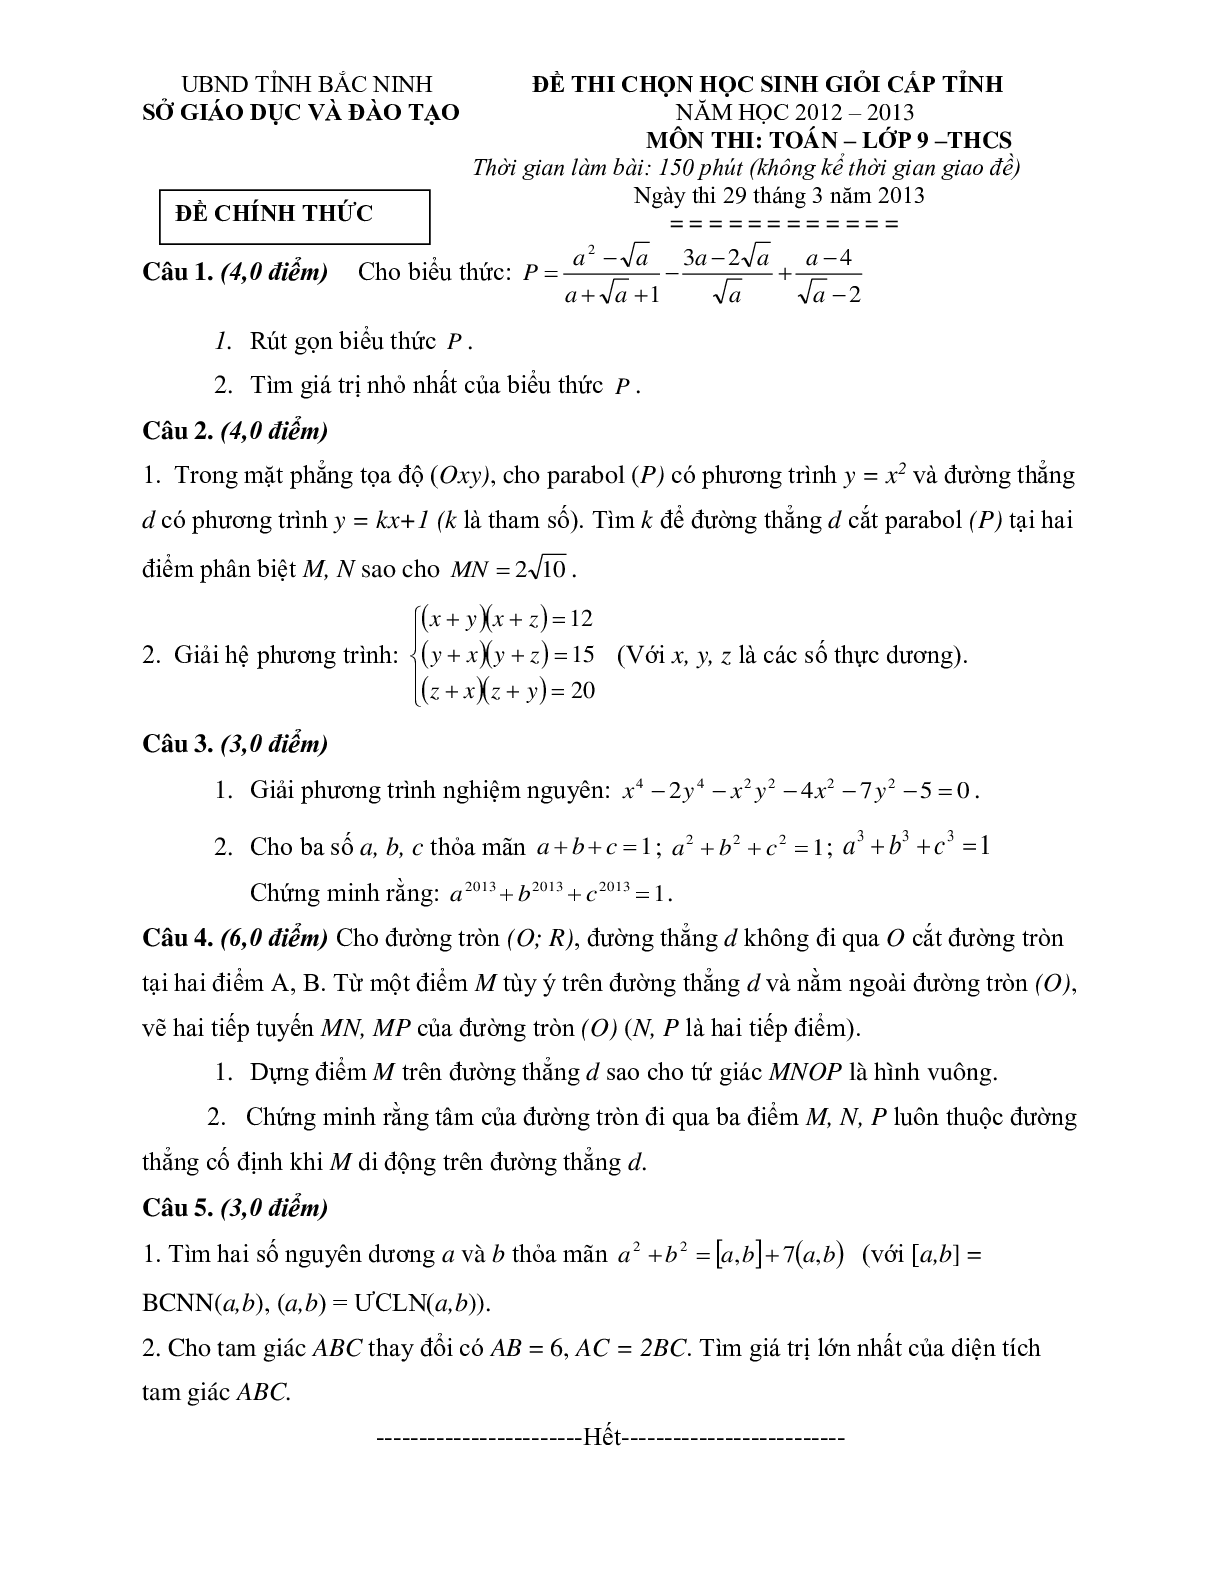 Đề thi học sinh giỏi môn toán lớp 9 các tỉnh thành (trang 3)